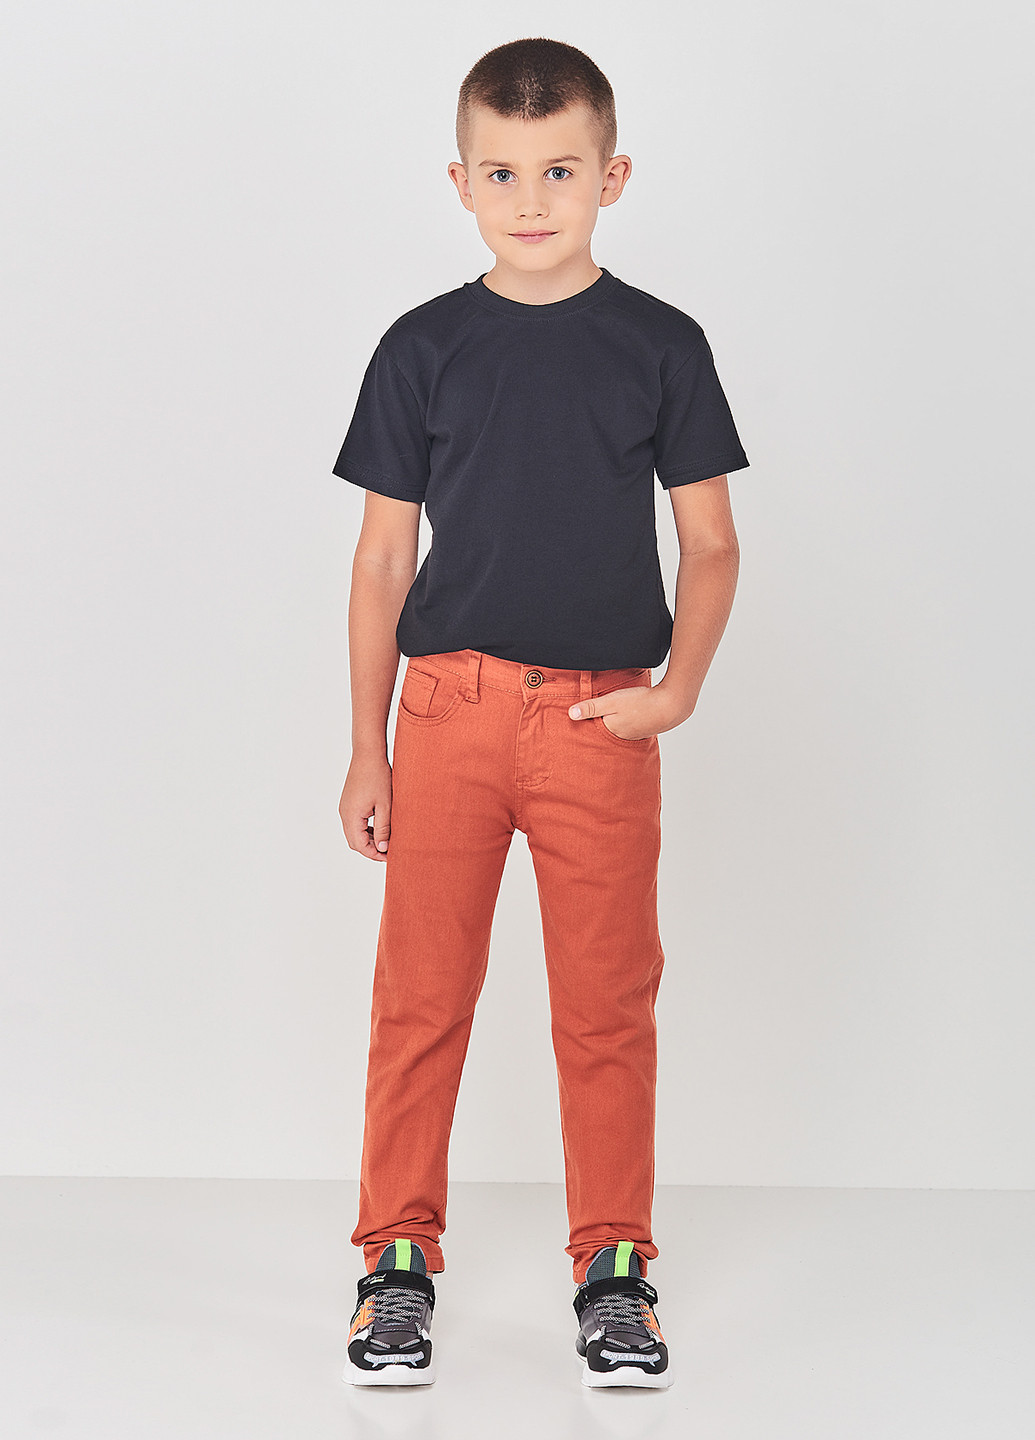 Оранжевые кэжуал демисезонные брюки зауженные Redpolo